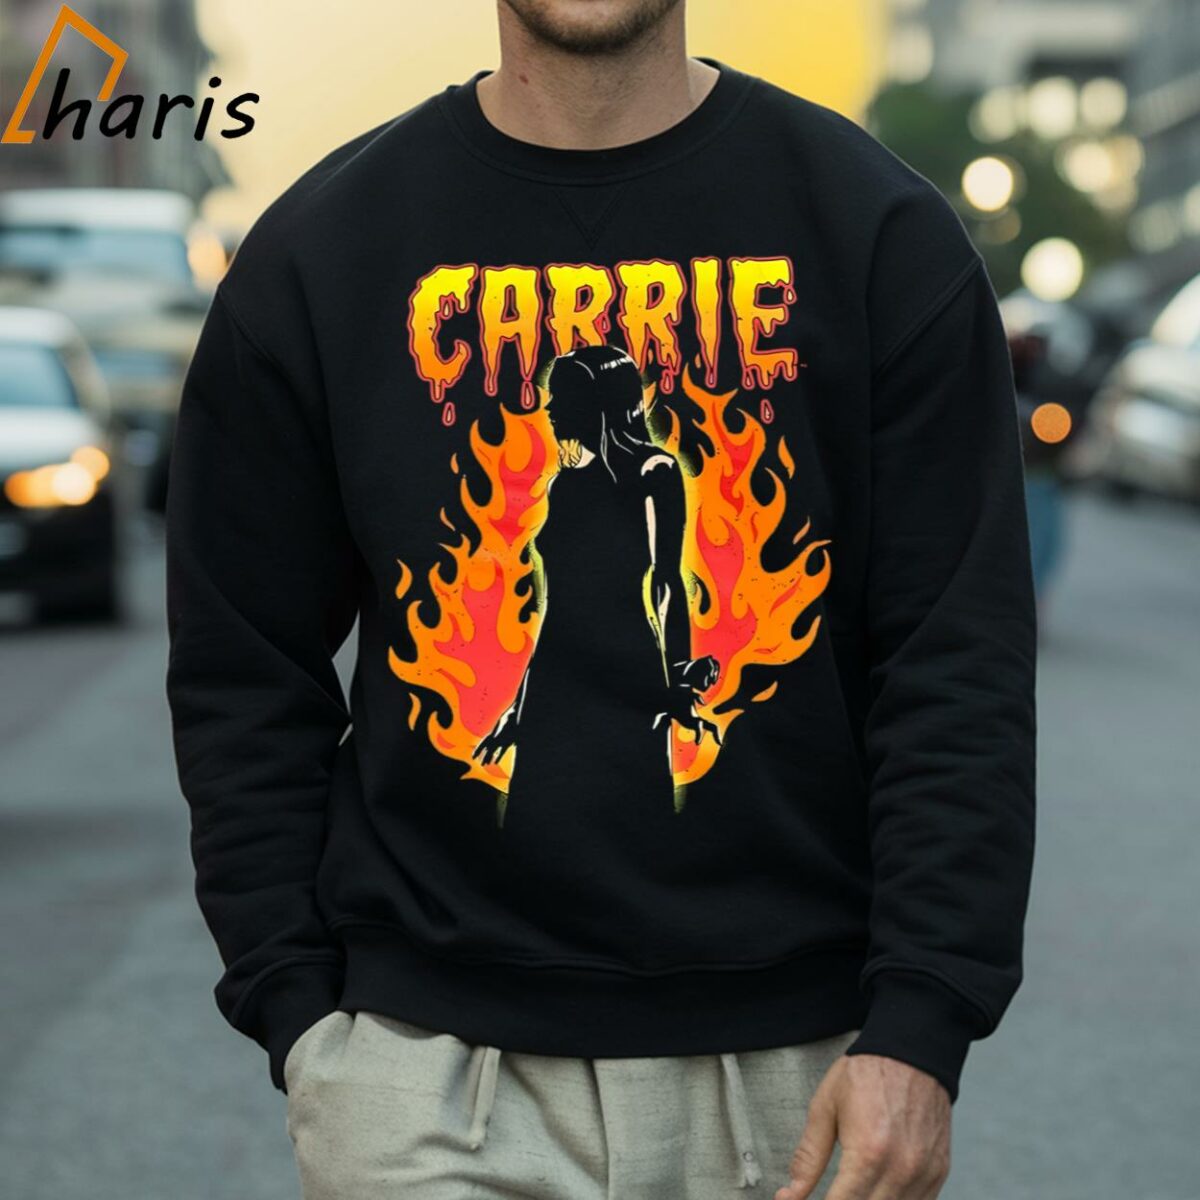 Carrie Stephen King 1976 Horror Movie Vintage T Shirt 4 Sweatshirt